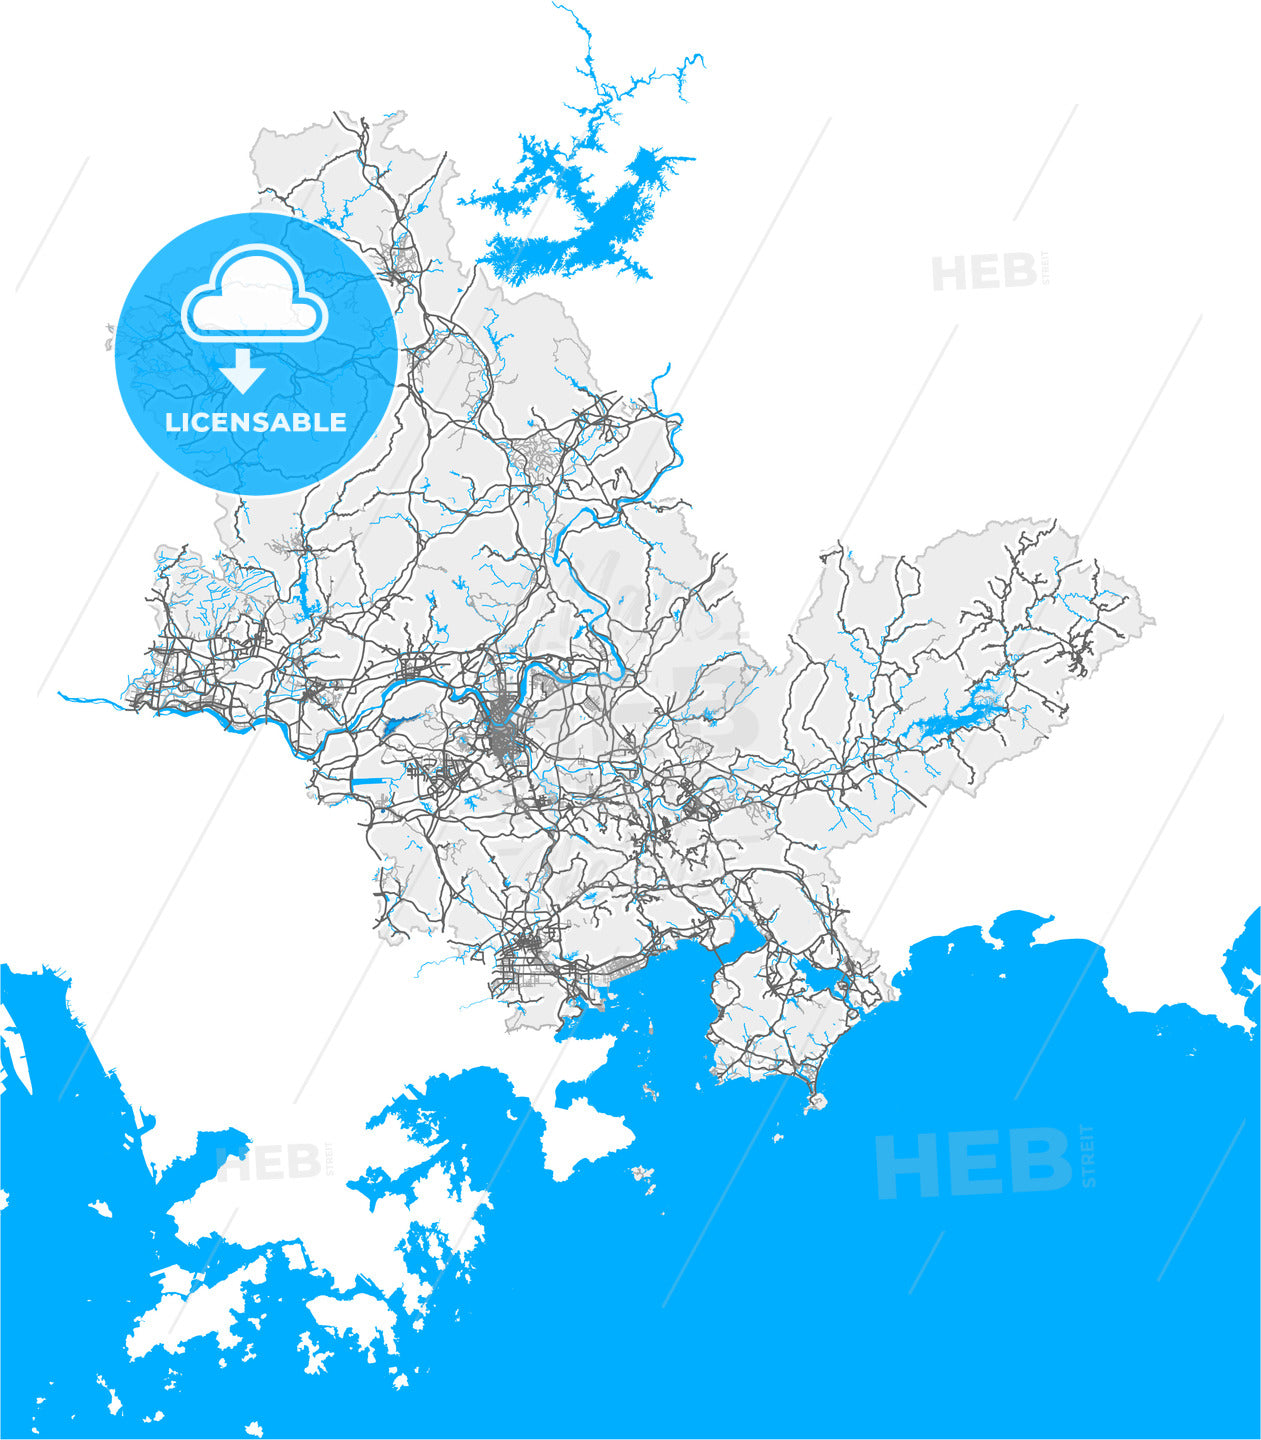 Huizhou, Guangdong, China, high quality vector map